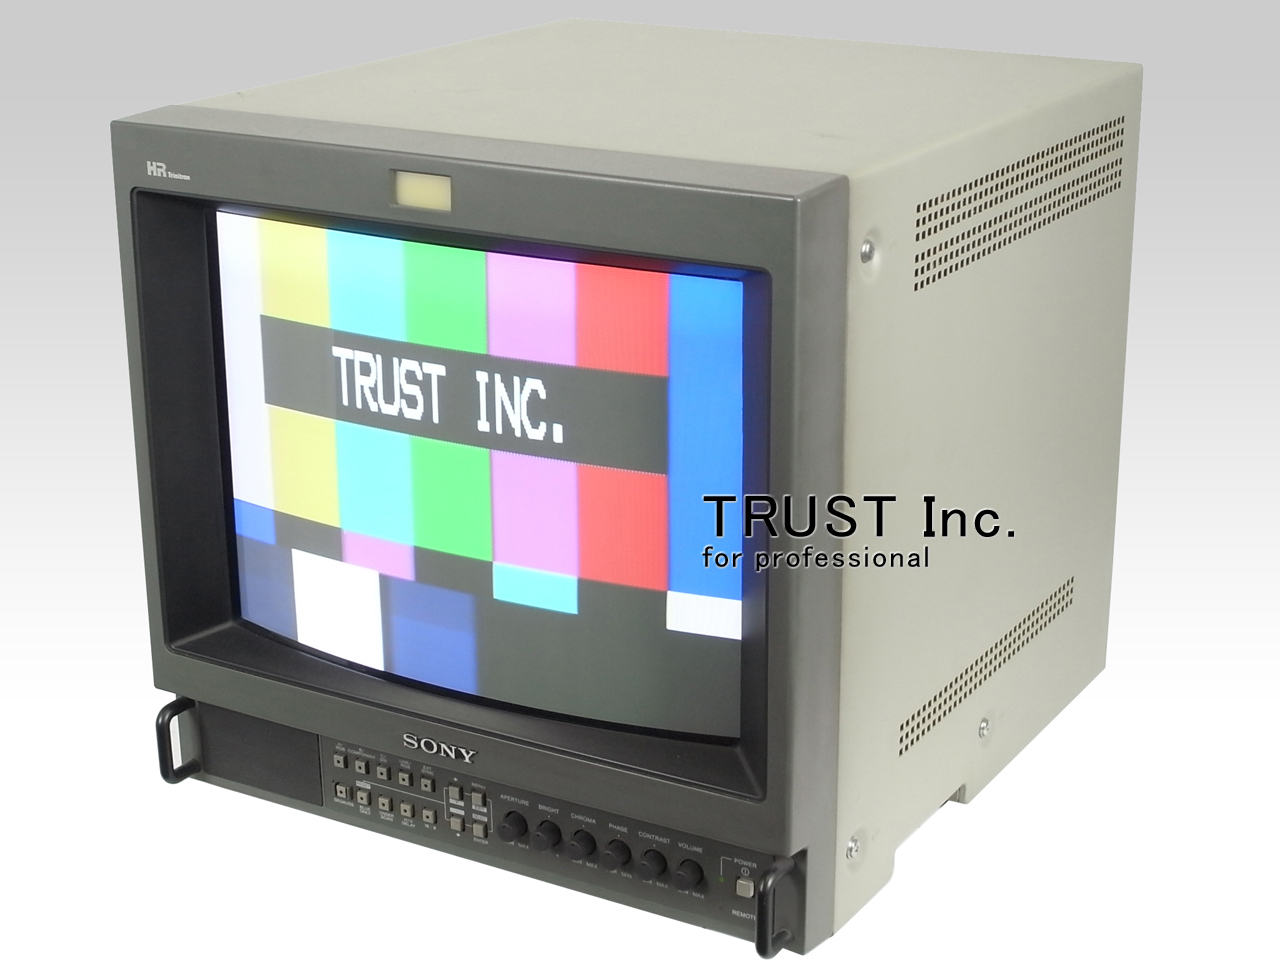 特売品コーナー ソニーPVM-1454Qモニター - テレビ・映像機器